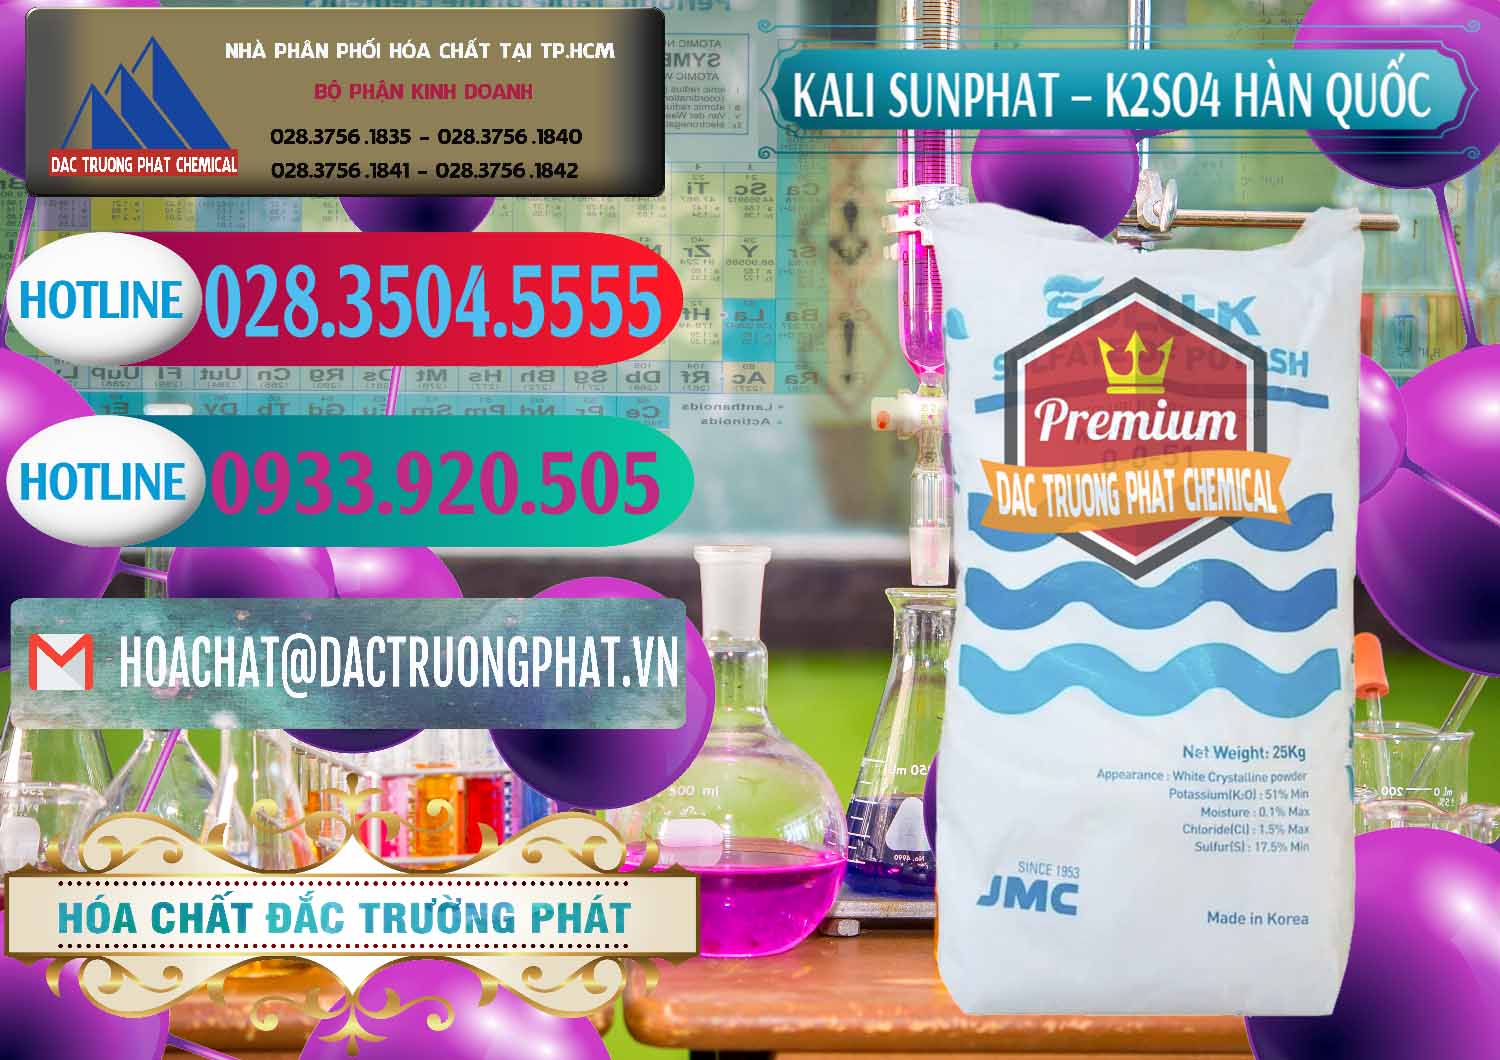 Cty chuyên kinh doanh và bán Kali Sunphat – K2SO4 Hàn Quốc Korea - 0410 - Công ty phân phối & nhập khẩu hóa chất tại TP.HCM - truongphat.vn